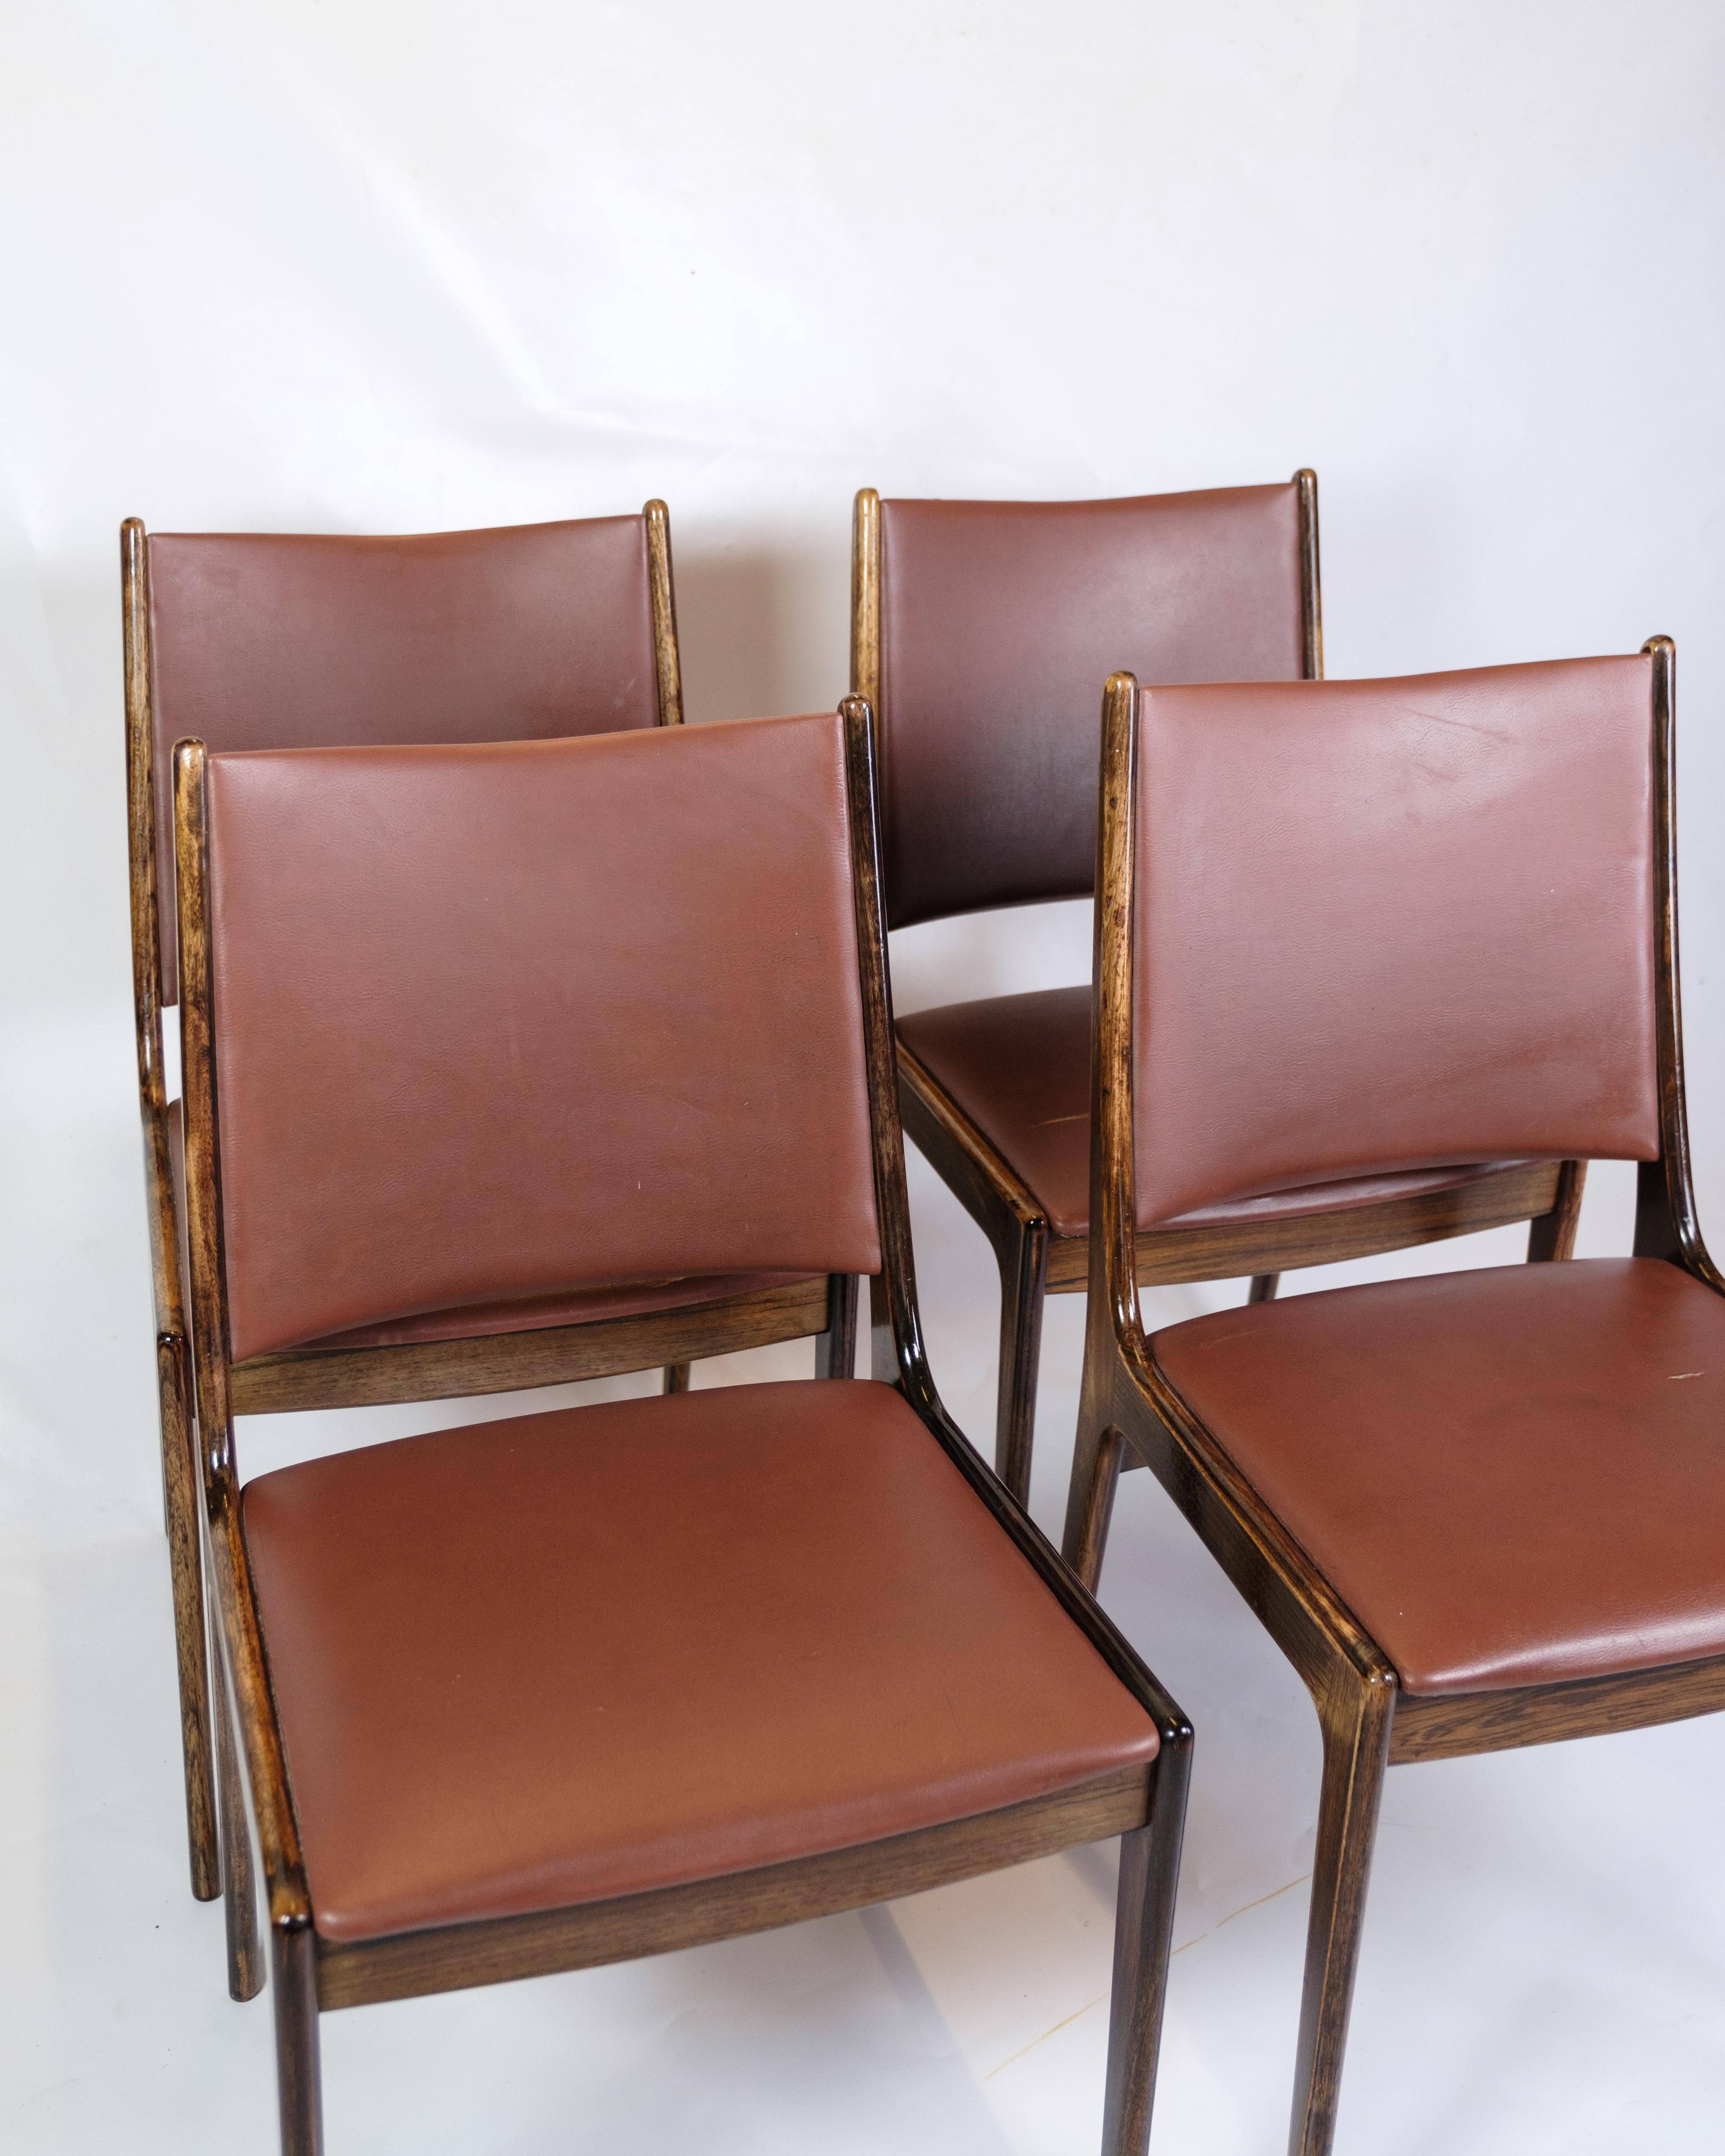 Cet ensemble de quatre chaises de table de salle à manger allie une élégance intemporelle à une grande fonctionnalité. Fabriquées en bois de rose massif et revêtues de cuir cognac, ces chaises offrent une assise confortable et une belle esthétique